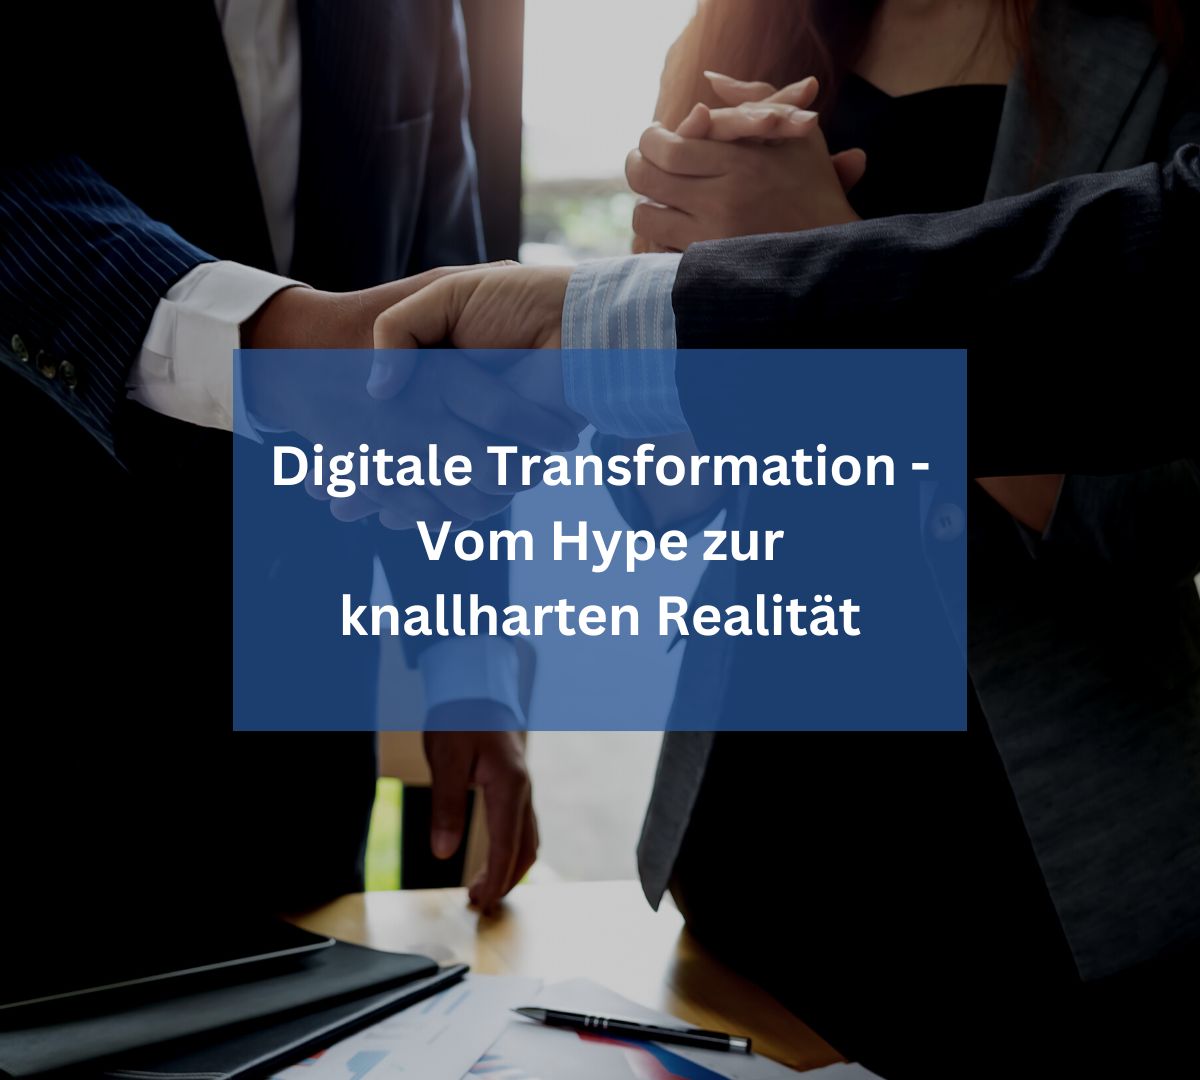 Digitale Transformation – Vom Hype zur knallharten Realität